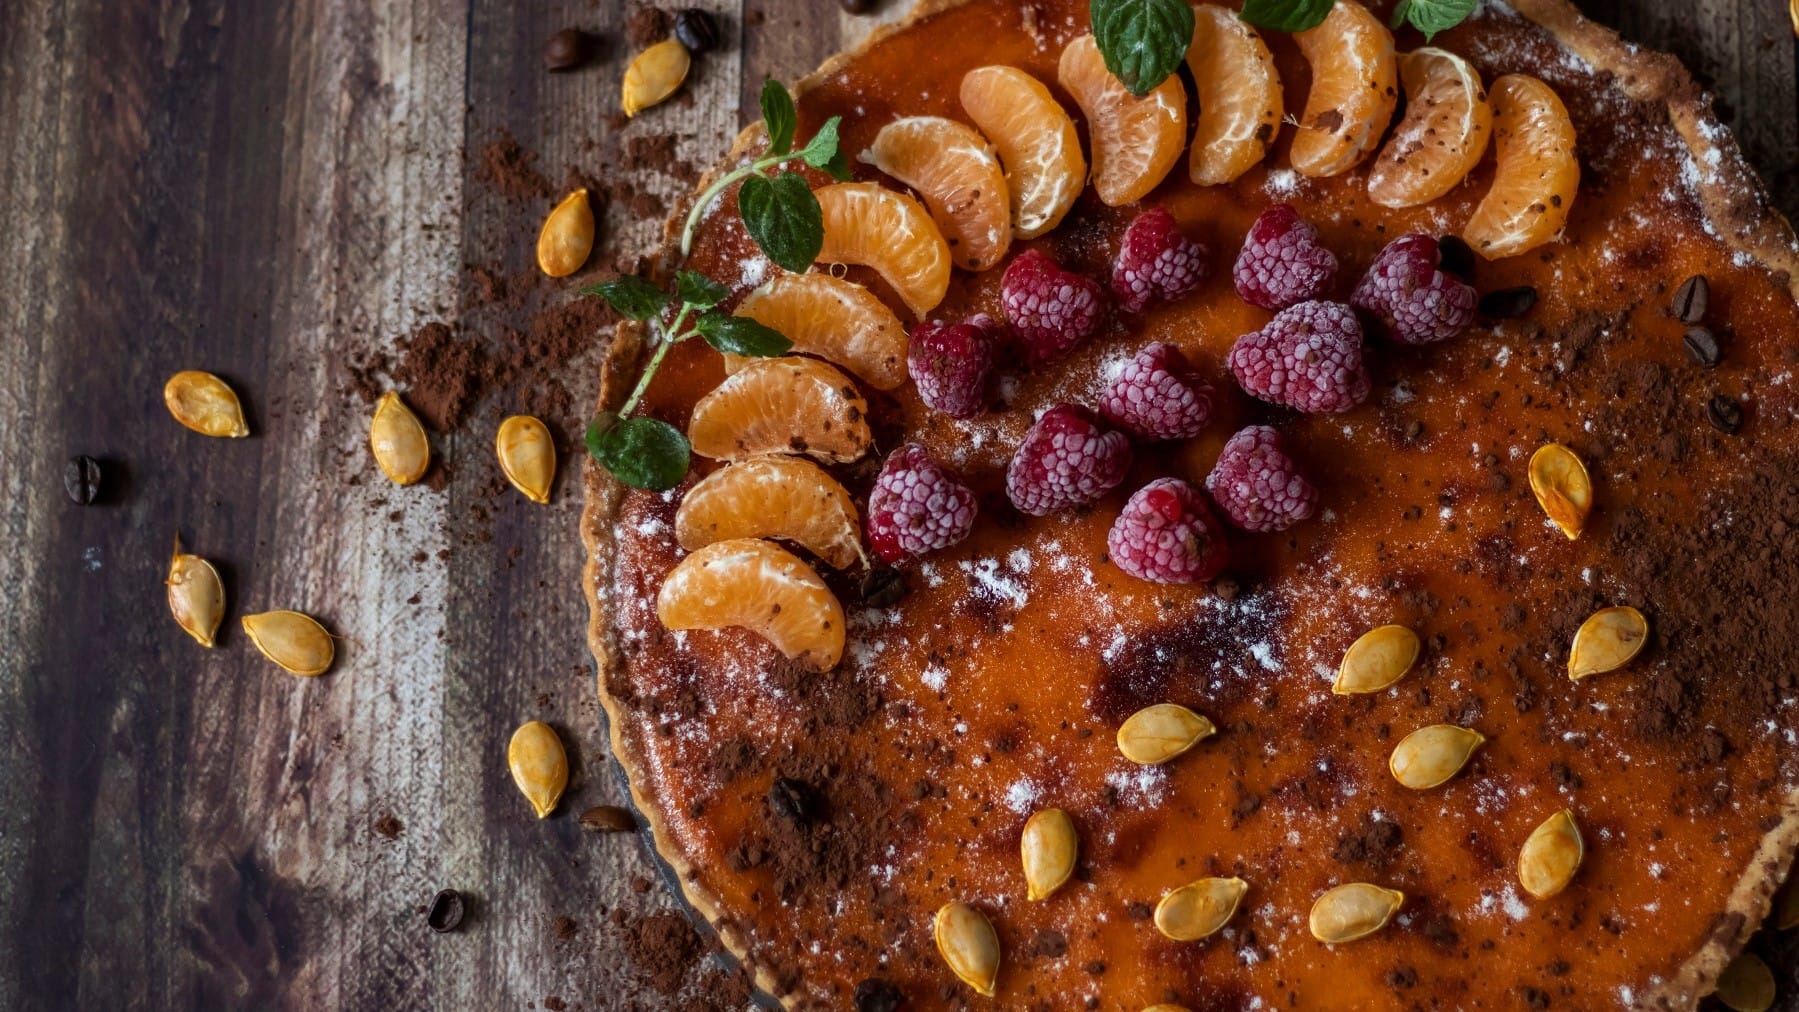 Ein Pumpkin Pie mit Obst ist angerichtet mit Mandarinen, Himbeeren, Kakaopulber und Puderzucker. Auf dem Kuchen und dem Untergrund liegen Kürbiskerne verteilt. Der Untergrund beseht aus braunem Holz.